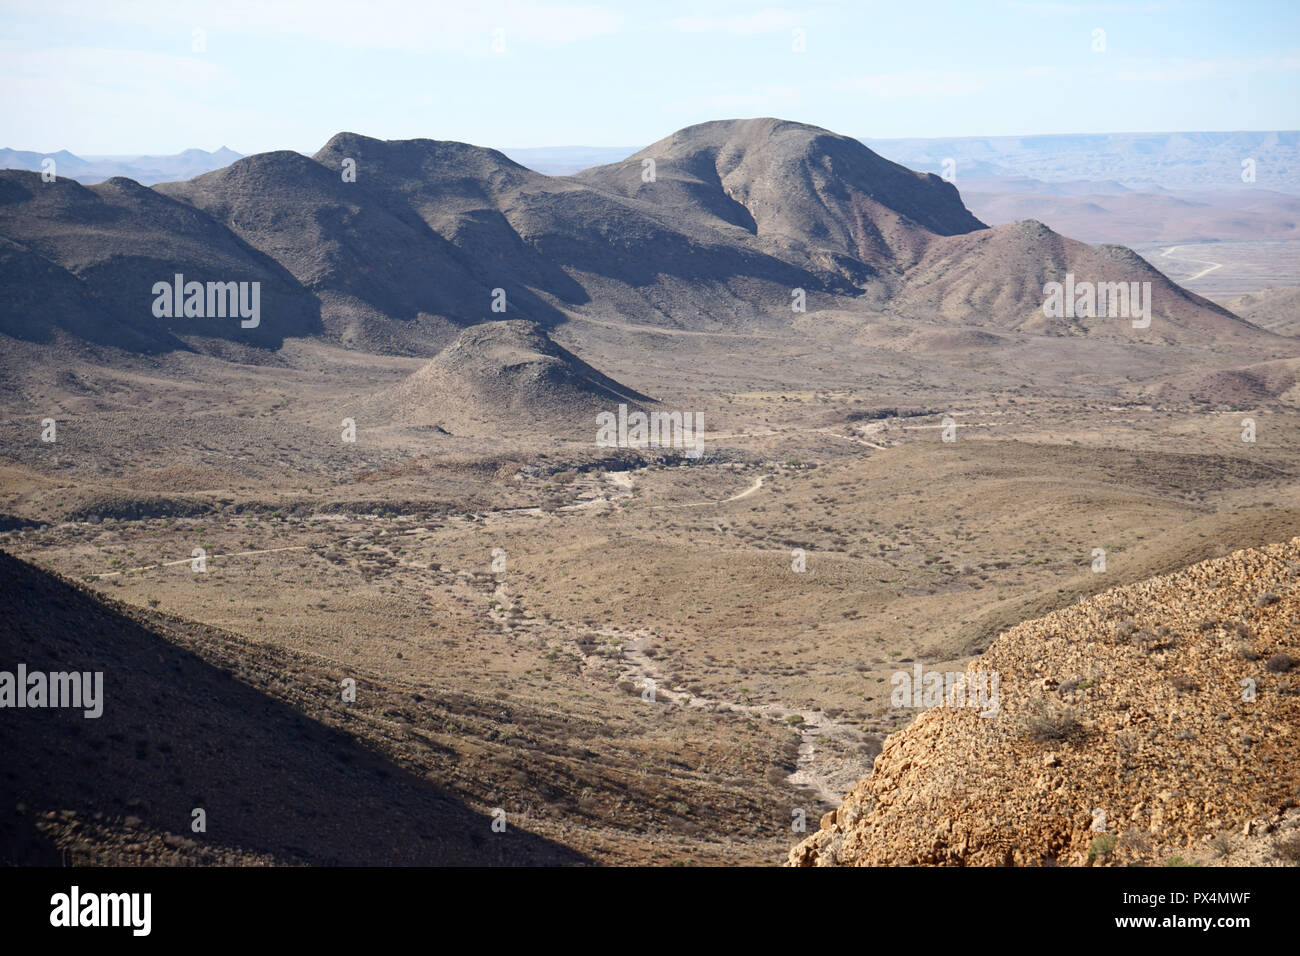 Landschaft am OliveTrail, Naukluft Gebirge, Namib-Naukluft Park, Namibia, Afrika Stock Photo